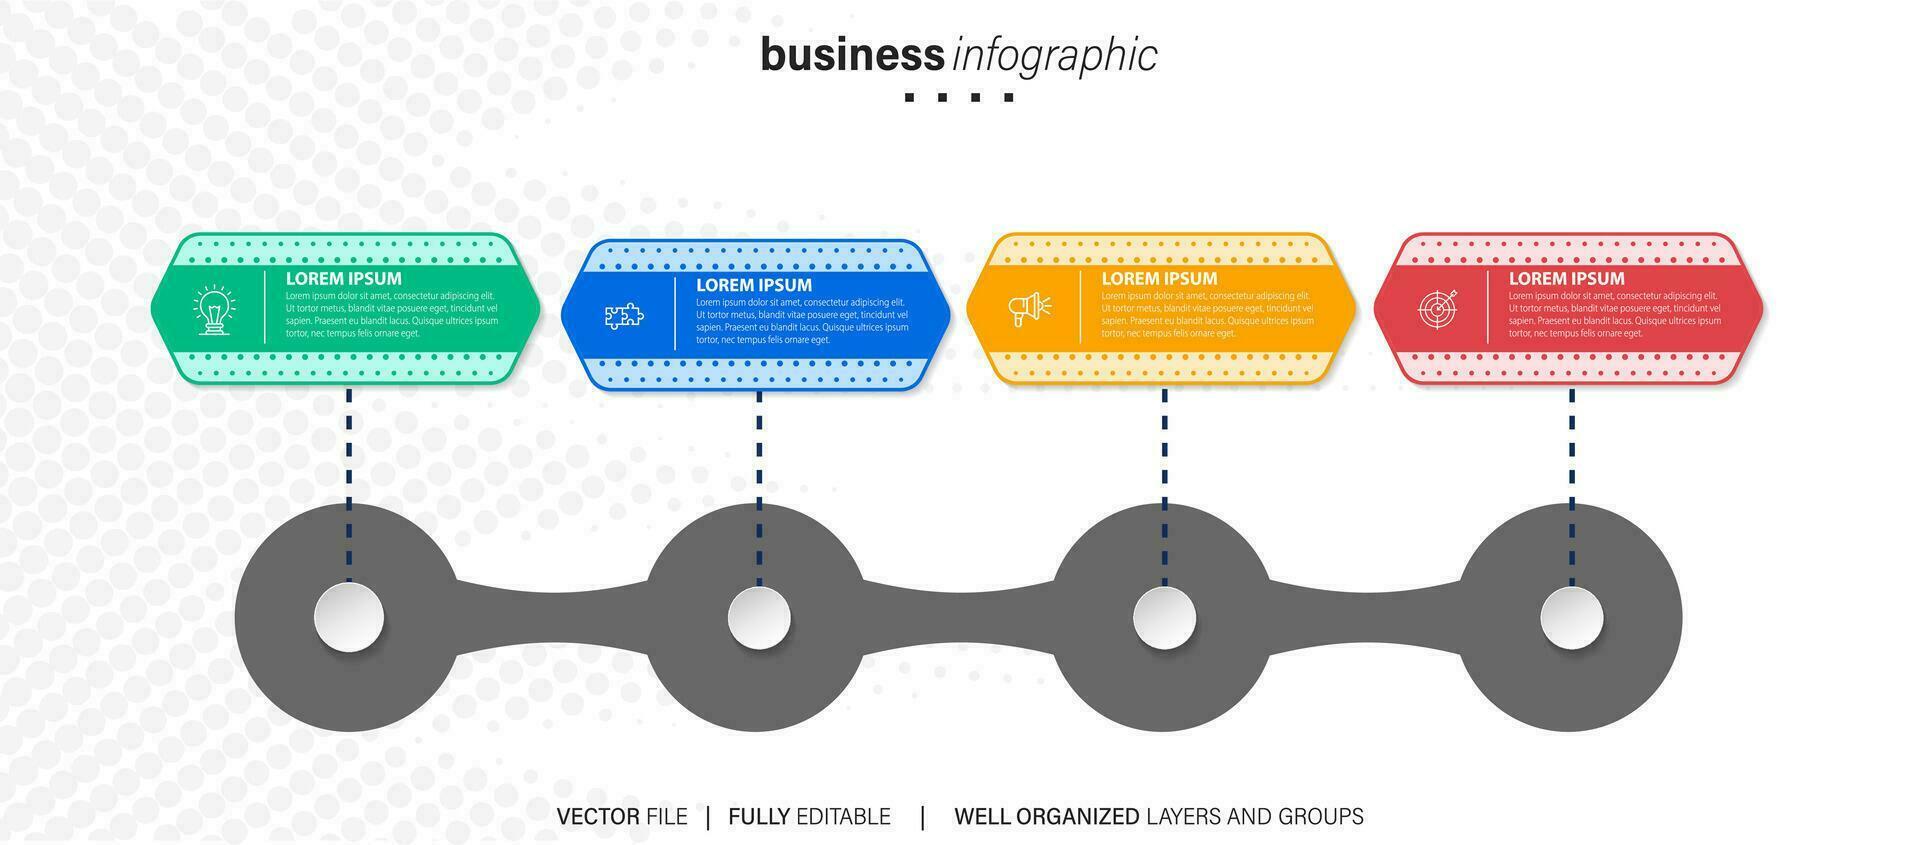 bedrijf werkwijze infographic sjabloon. dun lijn ontwerp met getallen 4 opties of stappen. vector illustratie grafisch ontwerp